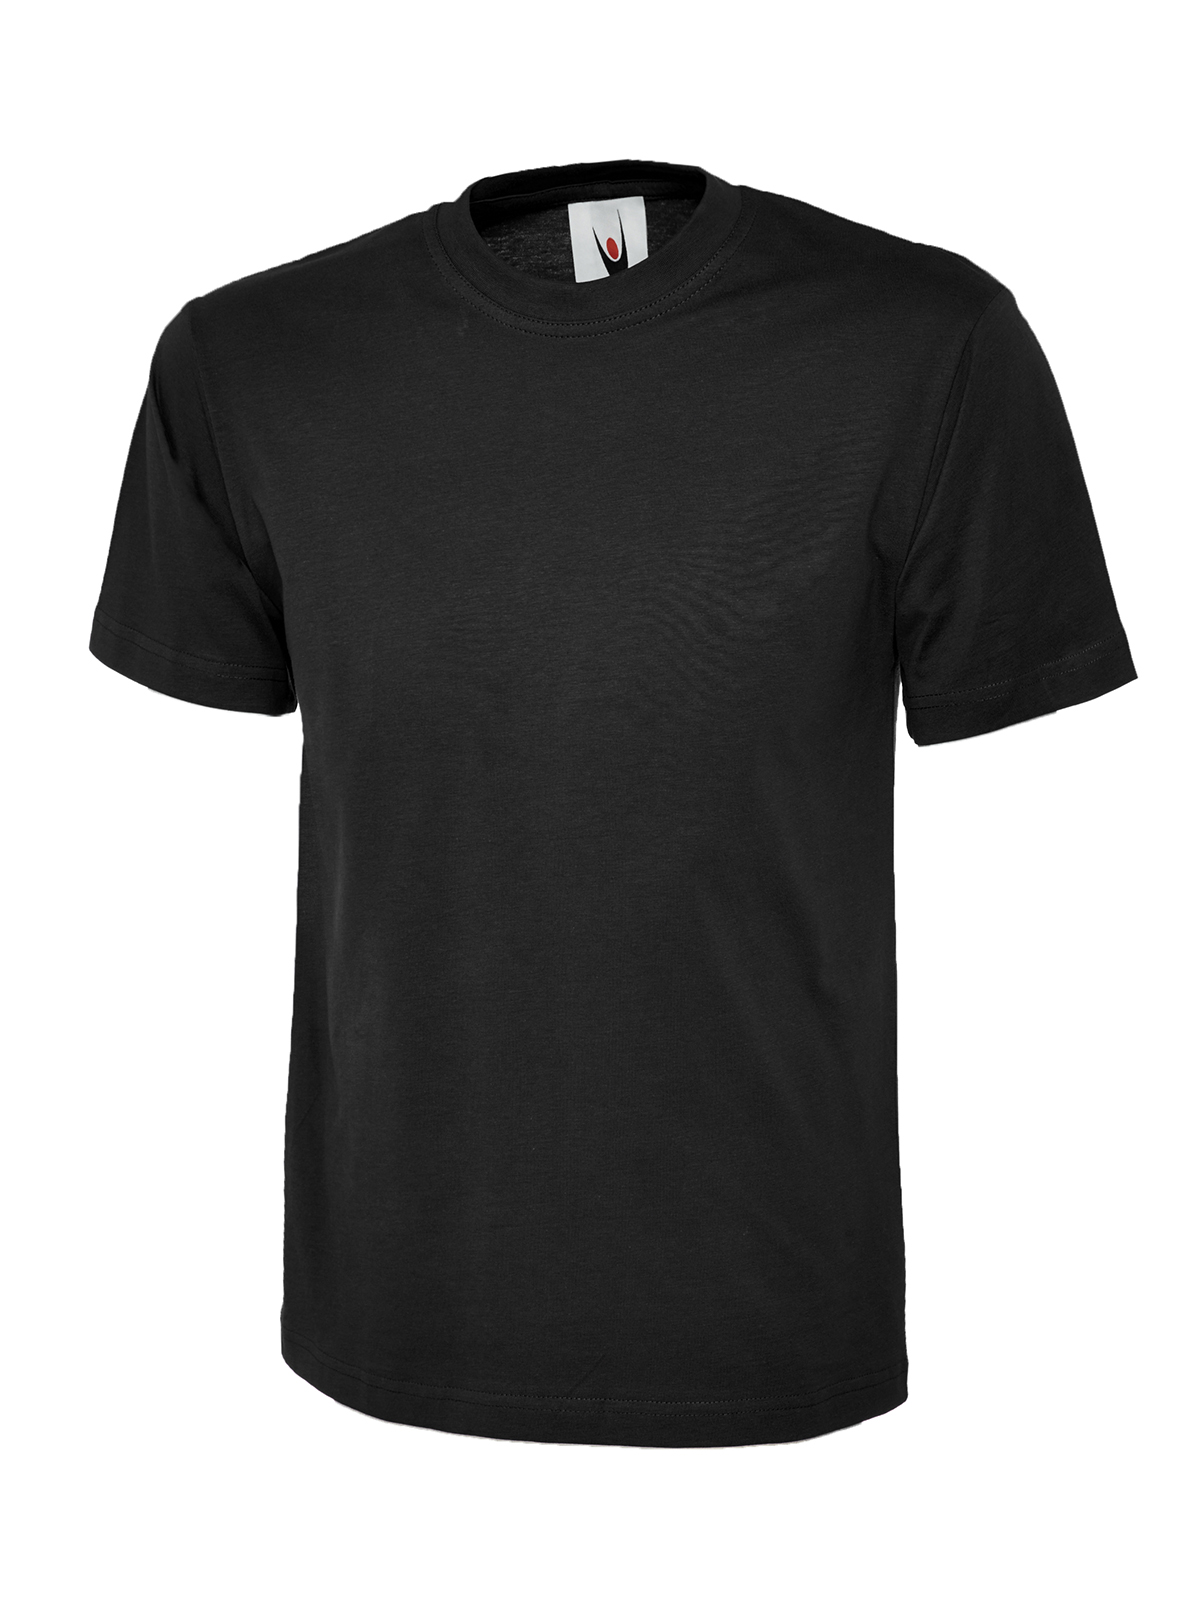 Uc301 180gsm classic t-shirt - black - 3xl